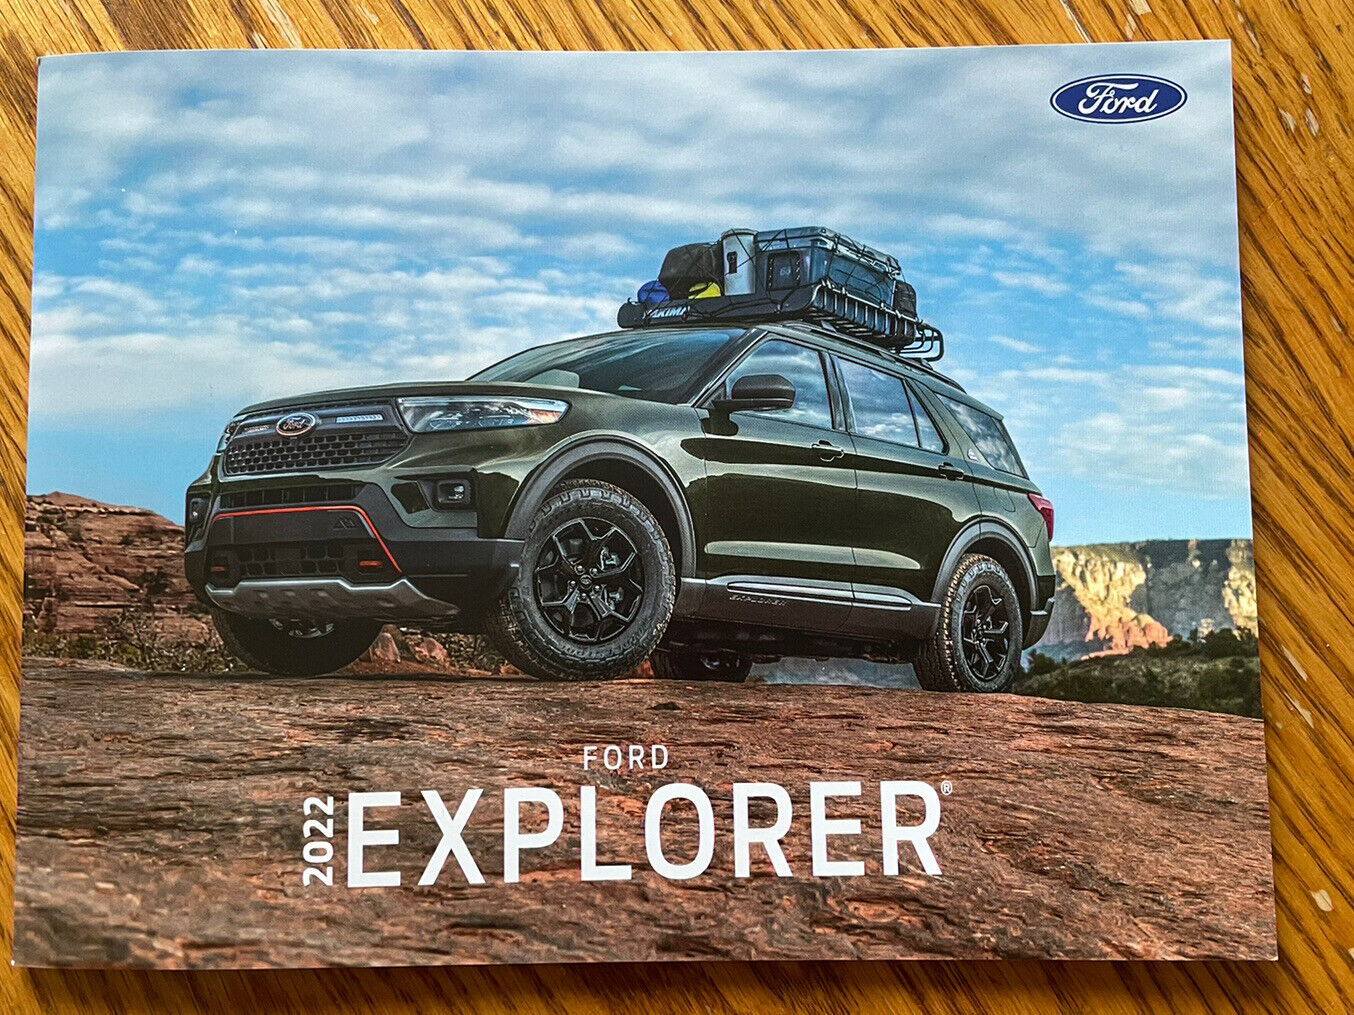 2022 Ford Explorer Brochure - 2022 Ford Brochures - Ford Brochures